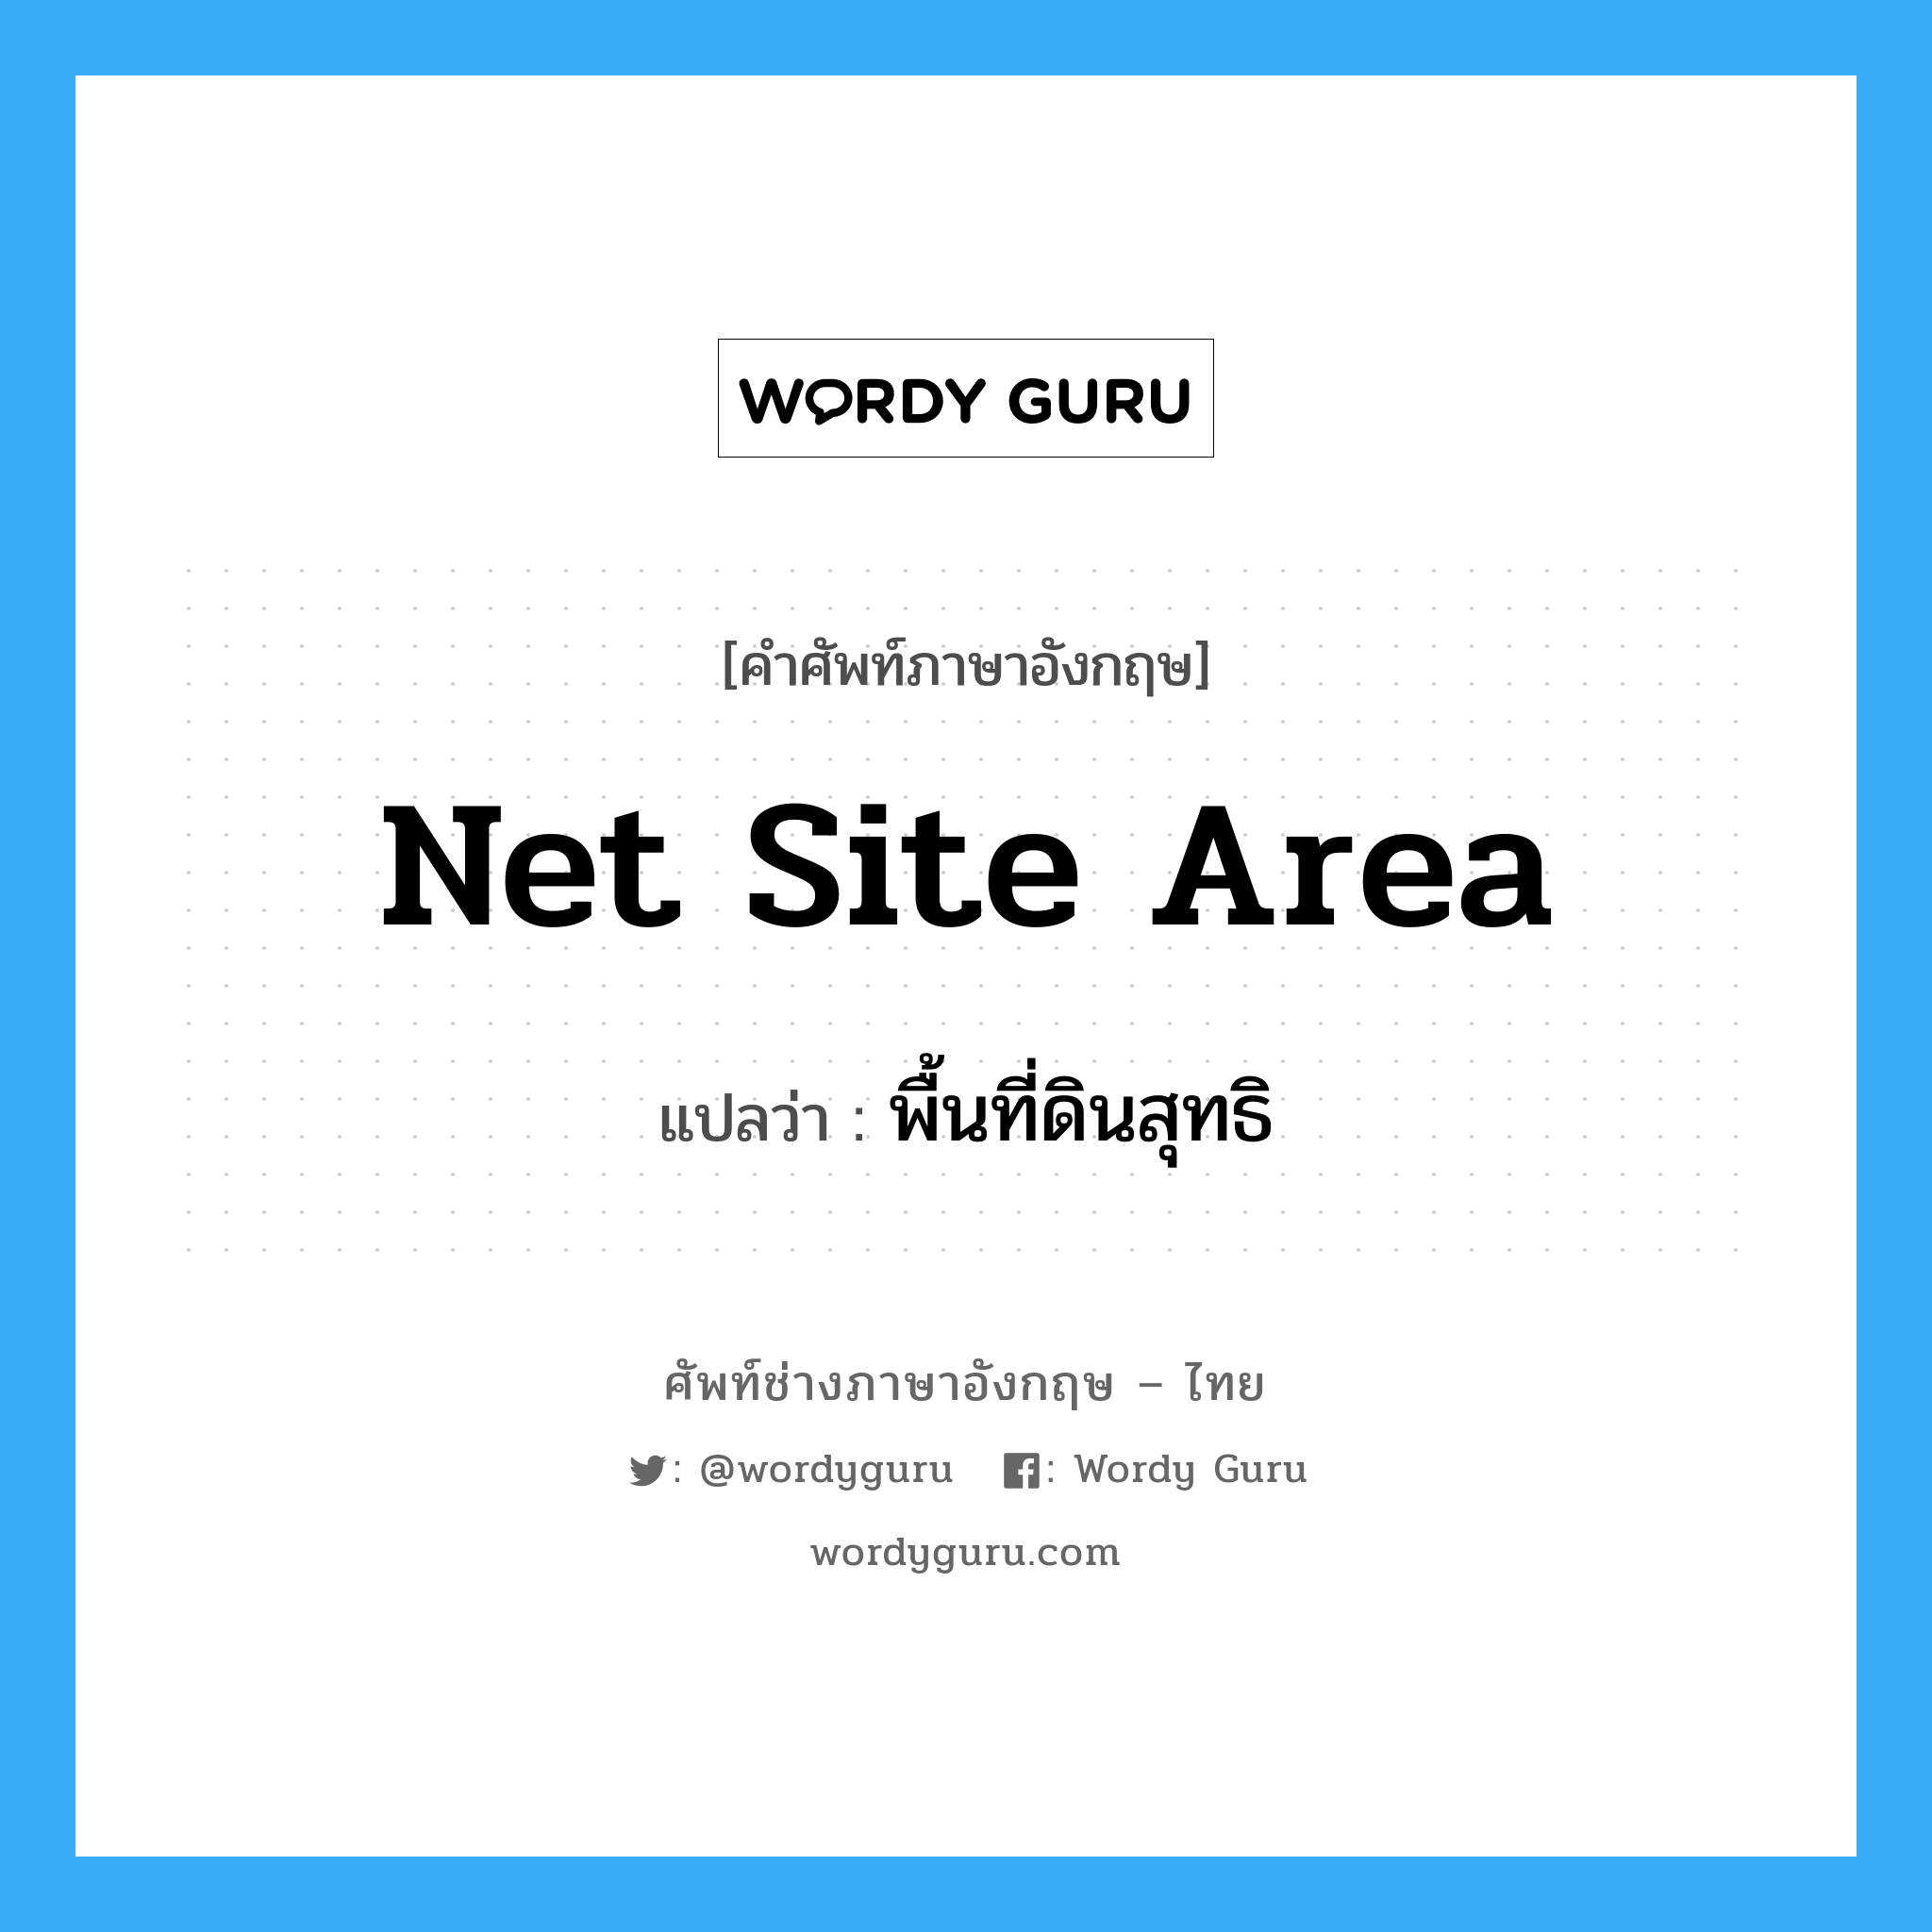 net site area แปลว่า?, คำศัพท์ช่างภาษาอังกฤษ - ไทย net site area คำศัพท์ภาษาอังกฤษ net site area แปลว่า พื้นที่ดินสุทธิ